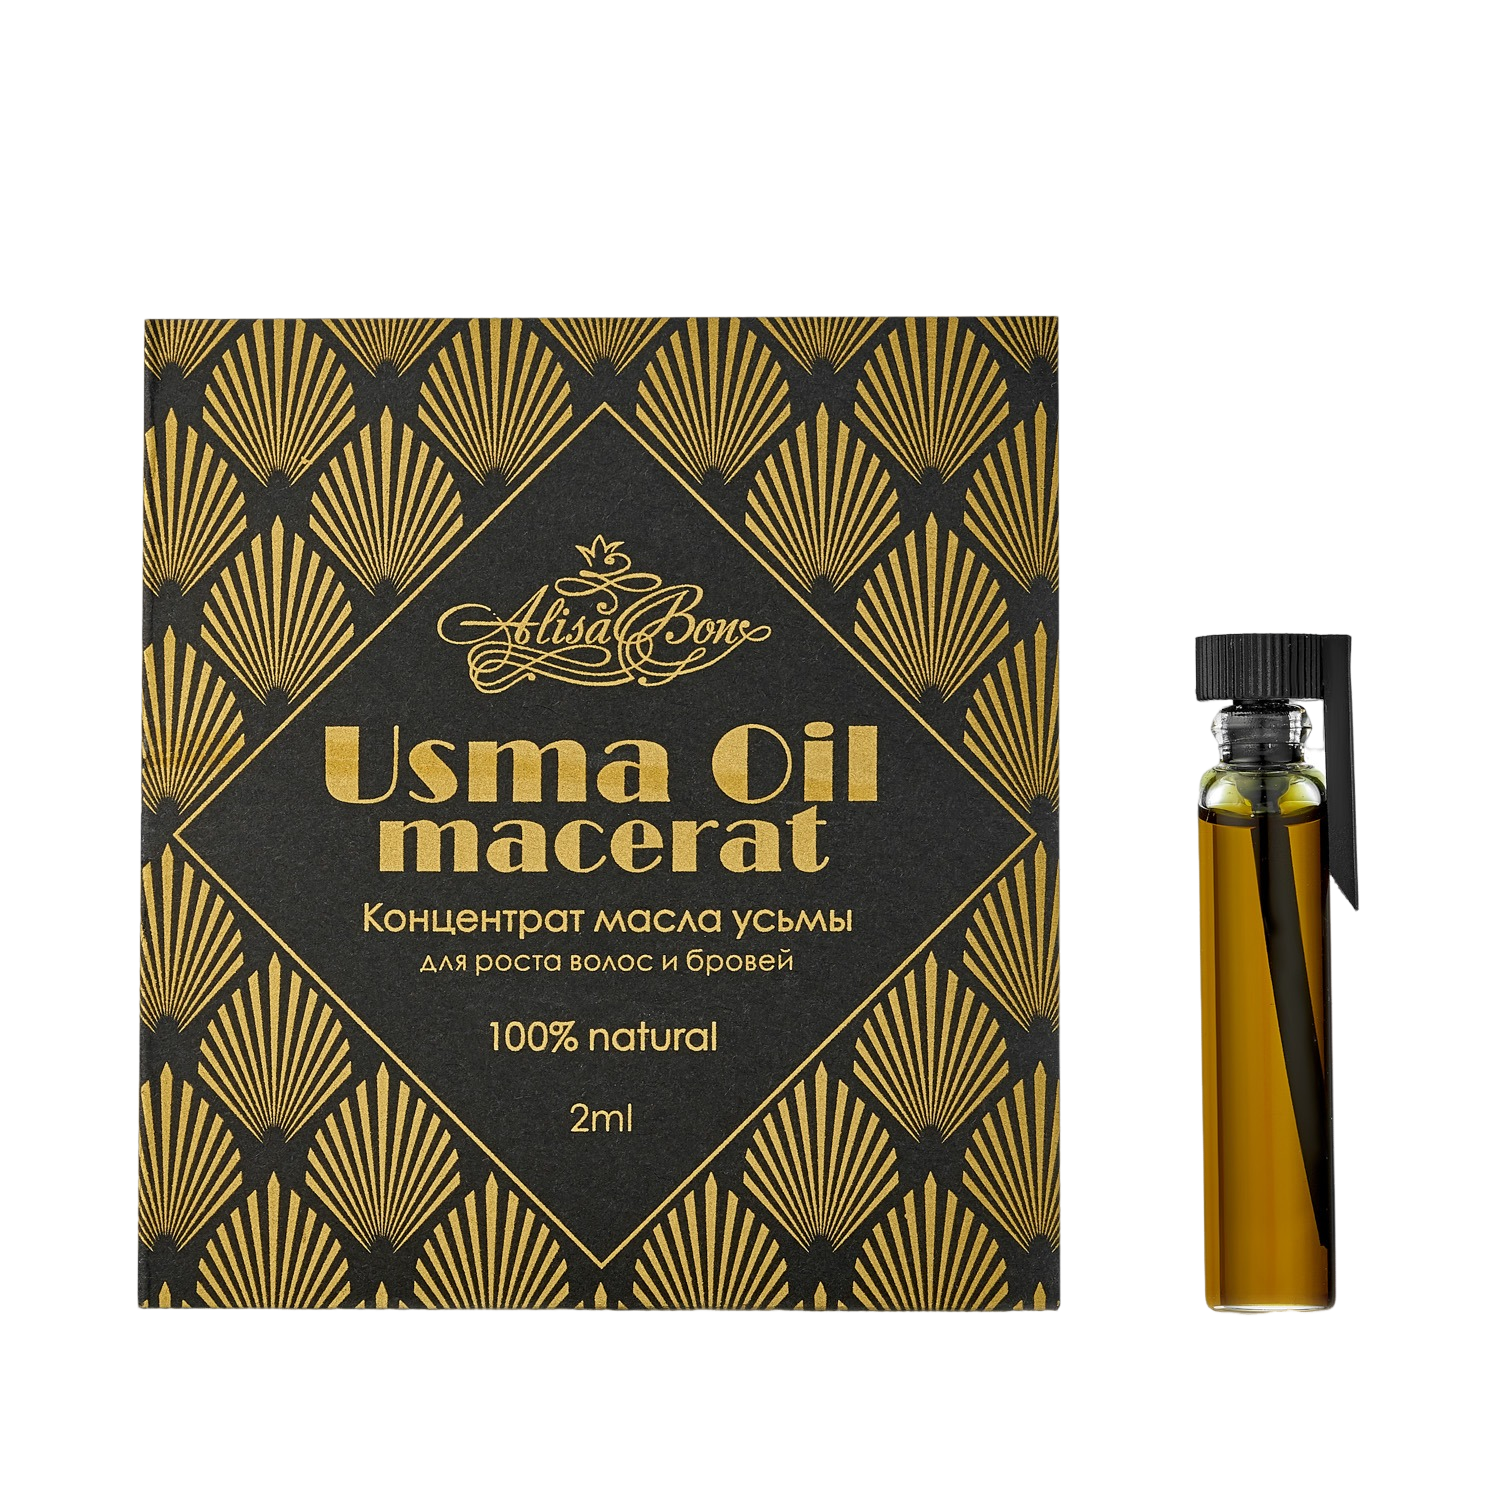 Концентрат масла усьмы Usma Oil macerat купить в VISAGEHALL